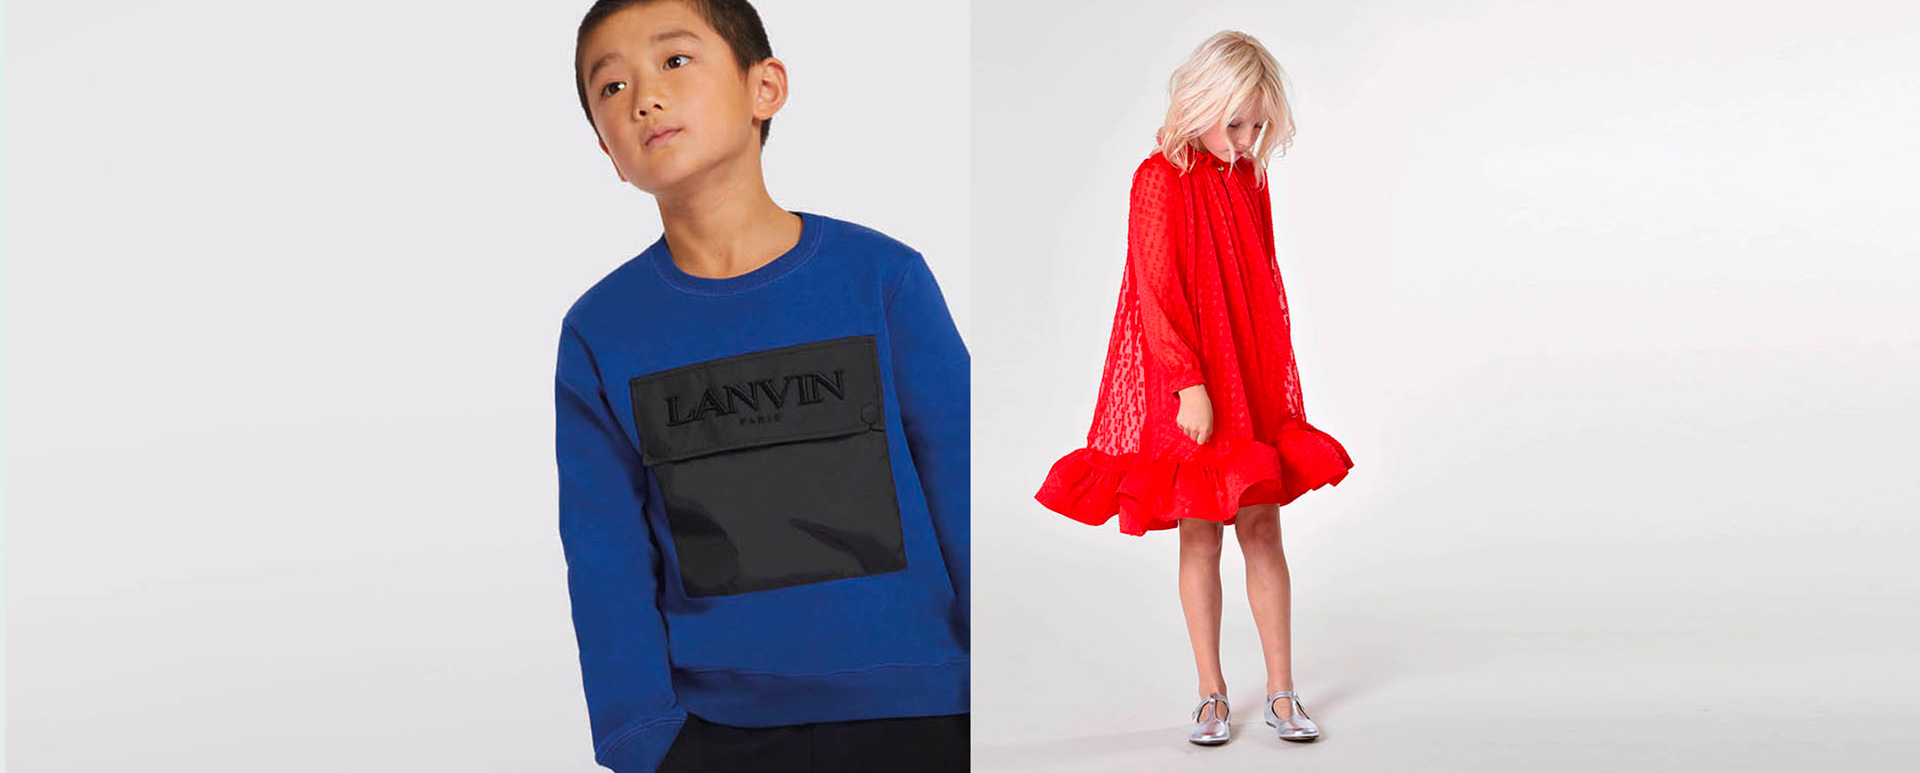 luxuriöse Kinderkleidung für Mädchen und Jungen von der Marke Lanvin